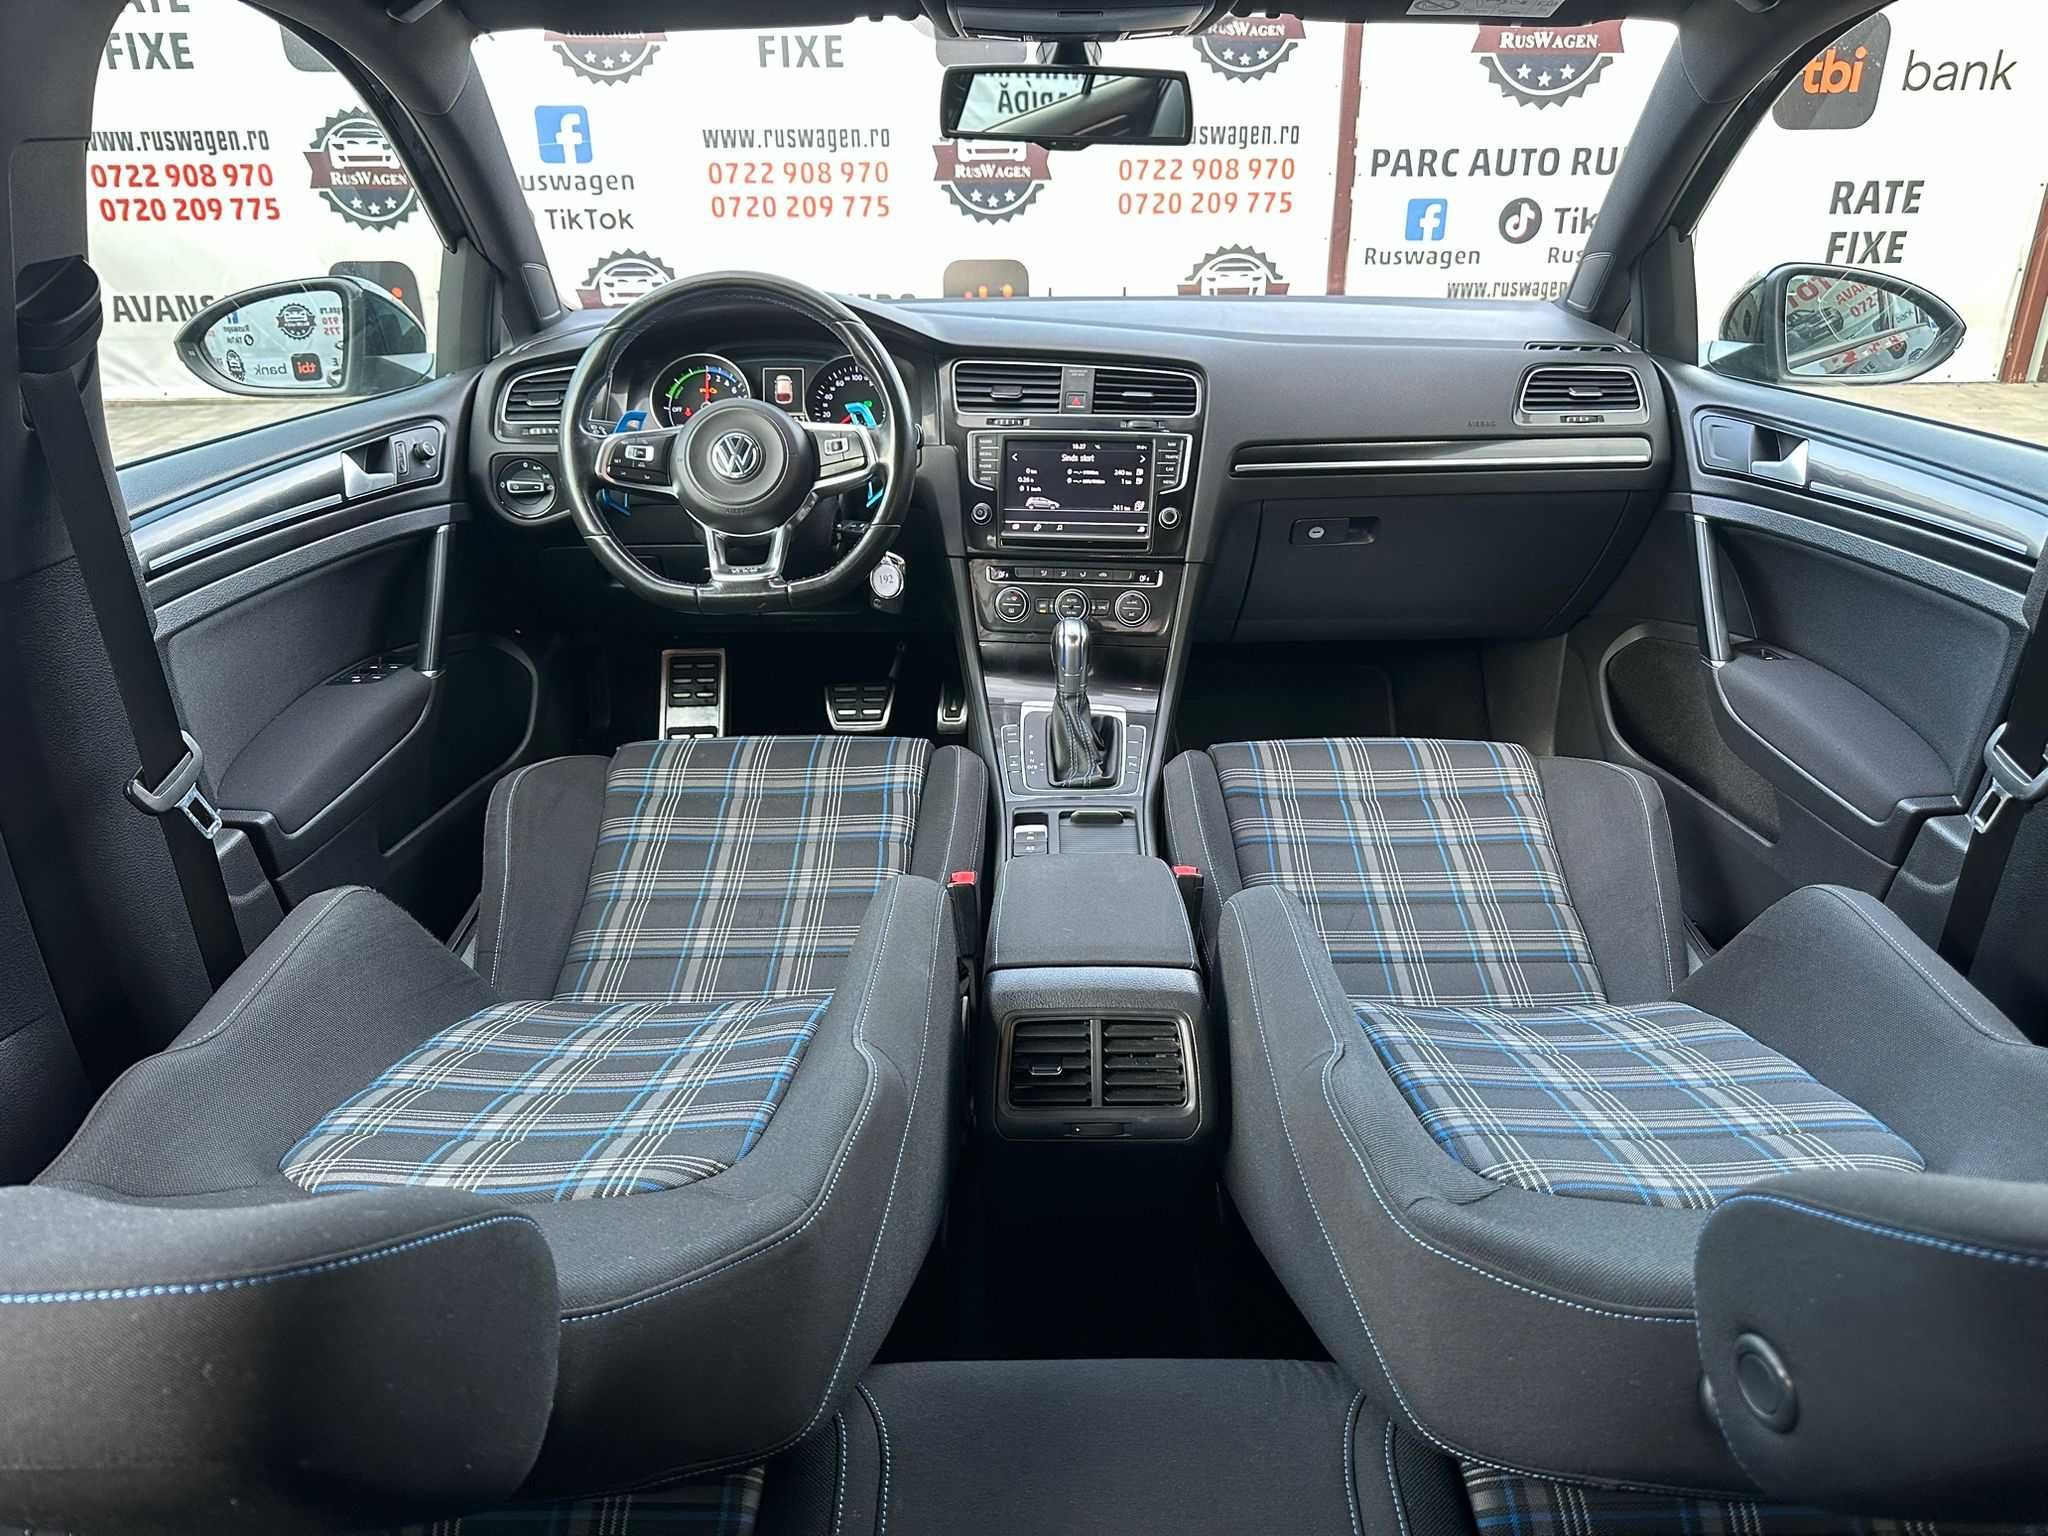 Volkswagen GOLF 7 GTE Plug-in Hybrid 2015/11 1,4Benzină Euro 6 DSG